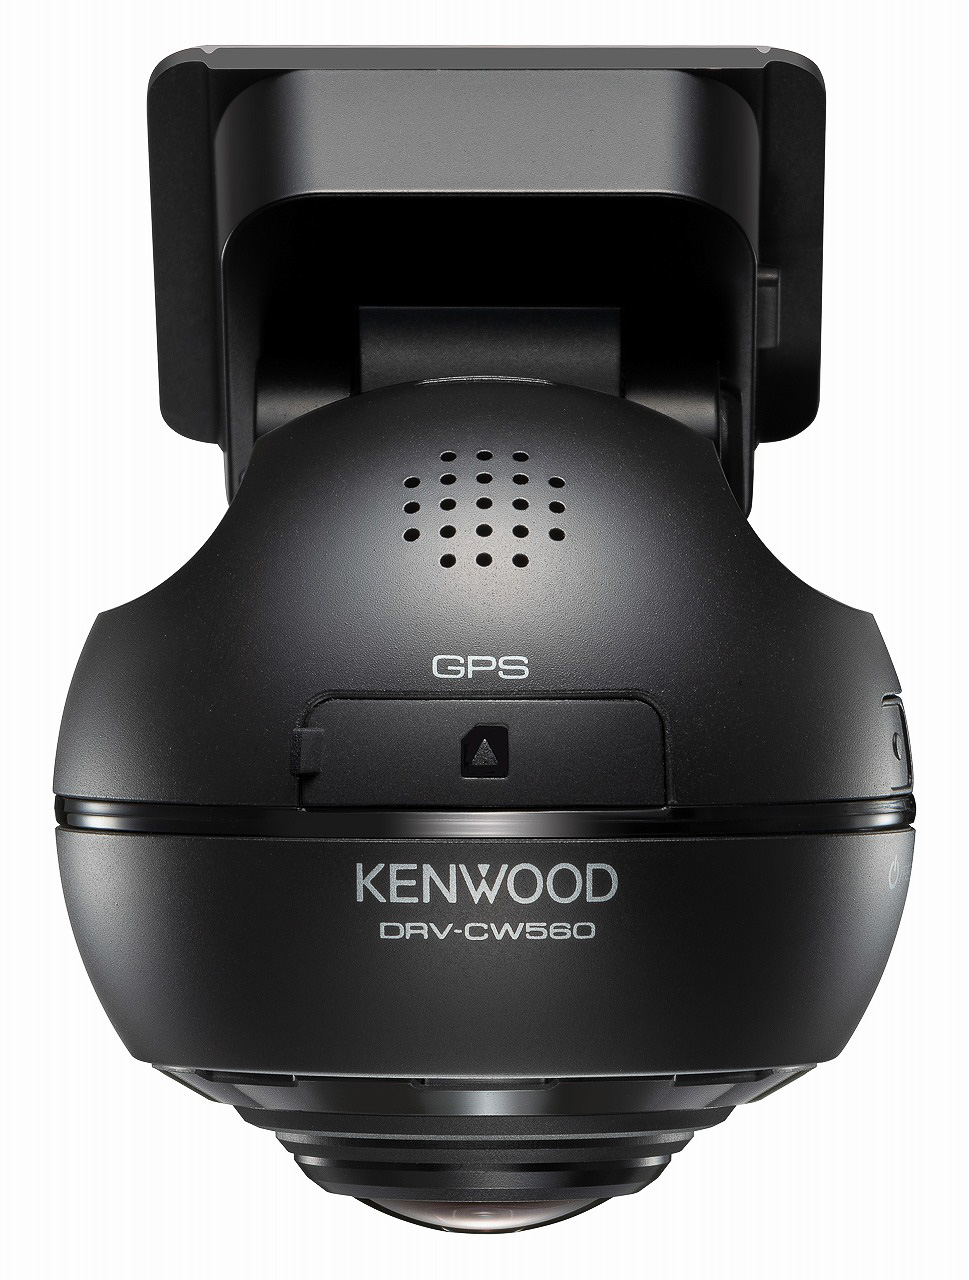 ケンウッド、360度撮影対応ドラレコの新製品「DRV-CW560」 フル 